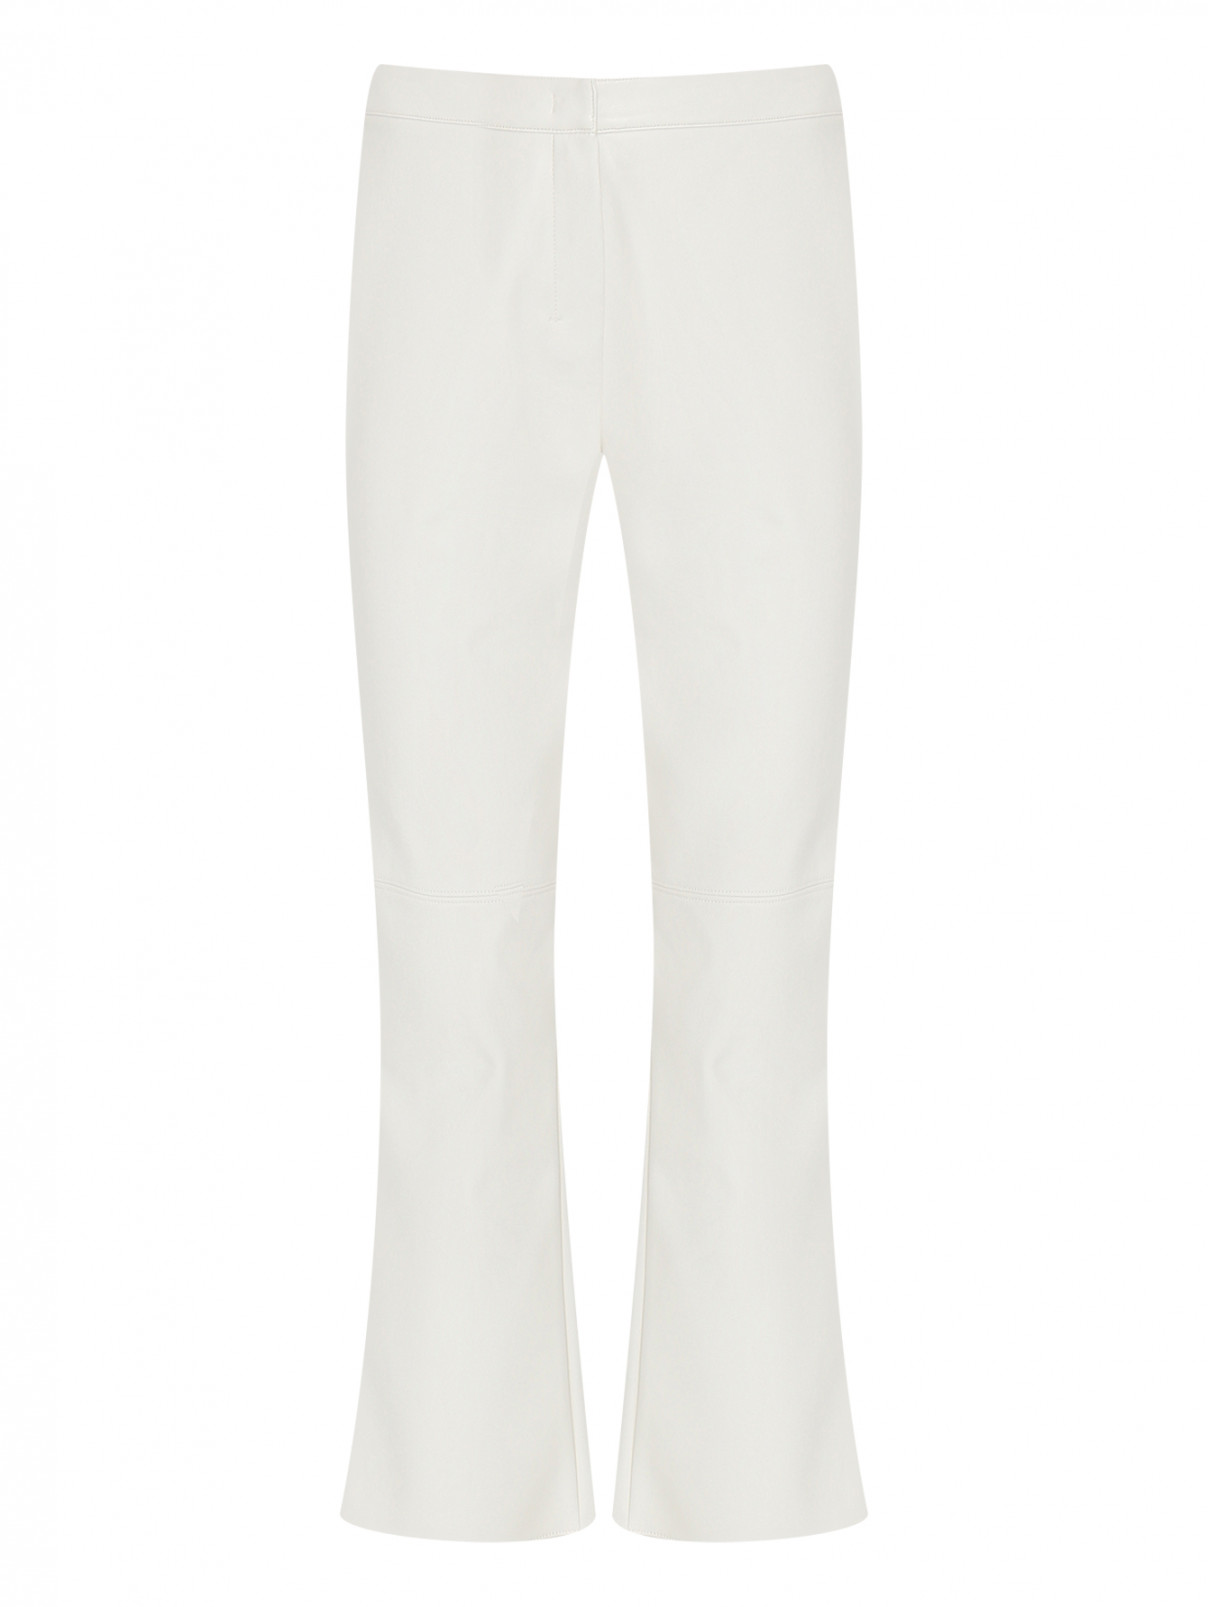 Однотонные брюки из эко-кожи Max Mara  –  Общий вид  – Цвет:  Белый